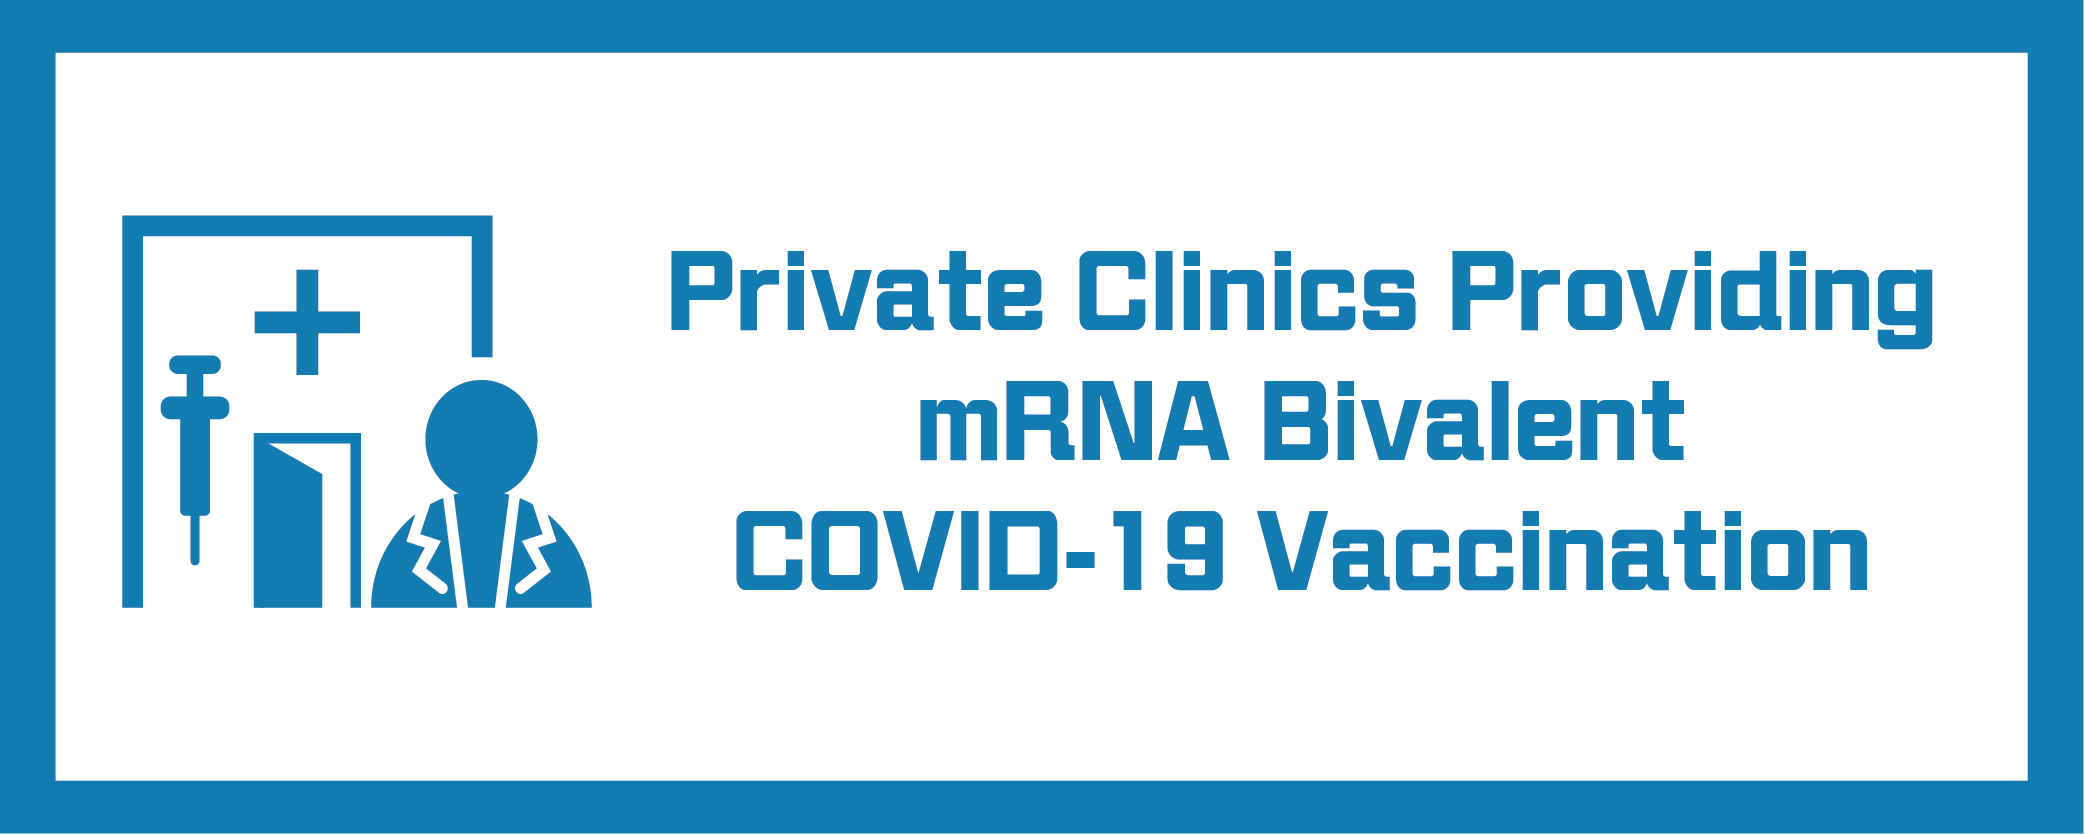 Private Clinics Providing mRNA Bivalent COVID-19 Vaccination